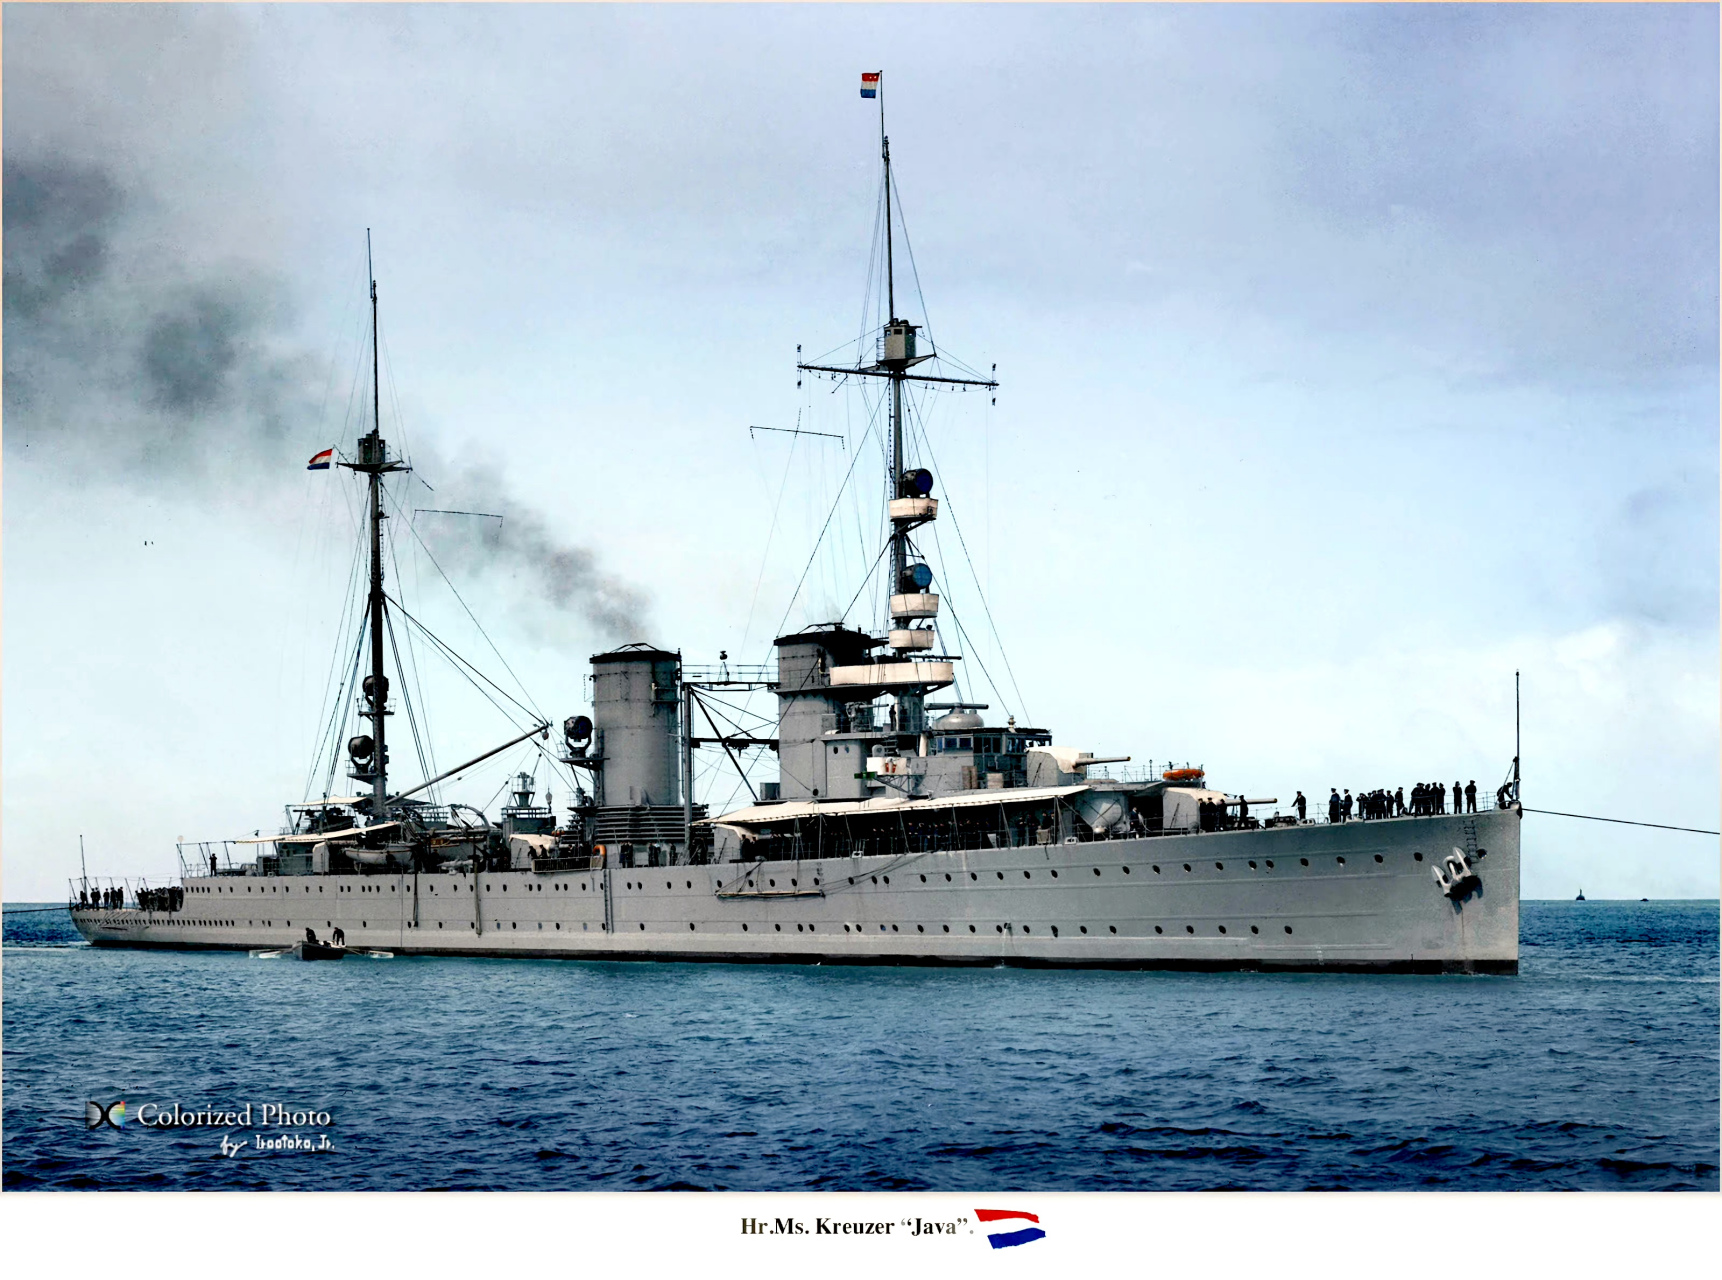 舰船欣赏:荷兰海军 爪哇号轻巡洋舰,该艘设计始于一战,因大战和财政